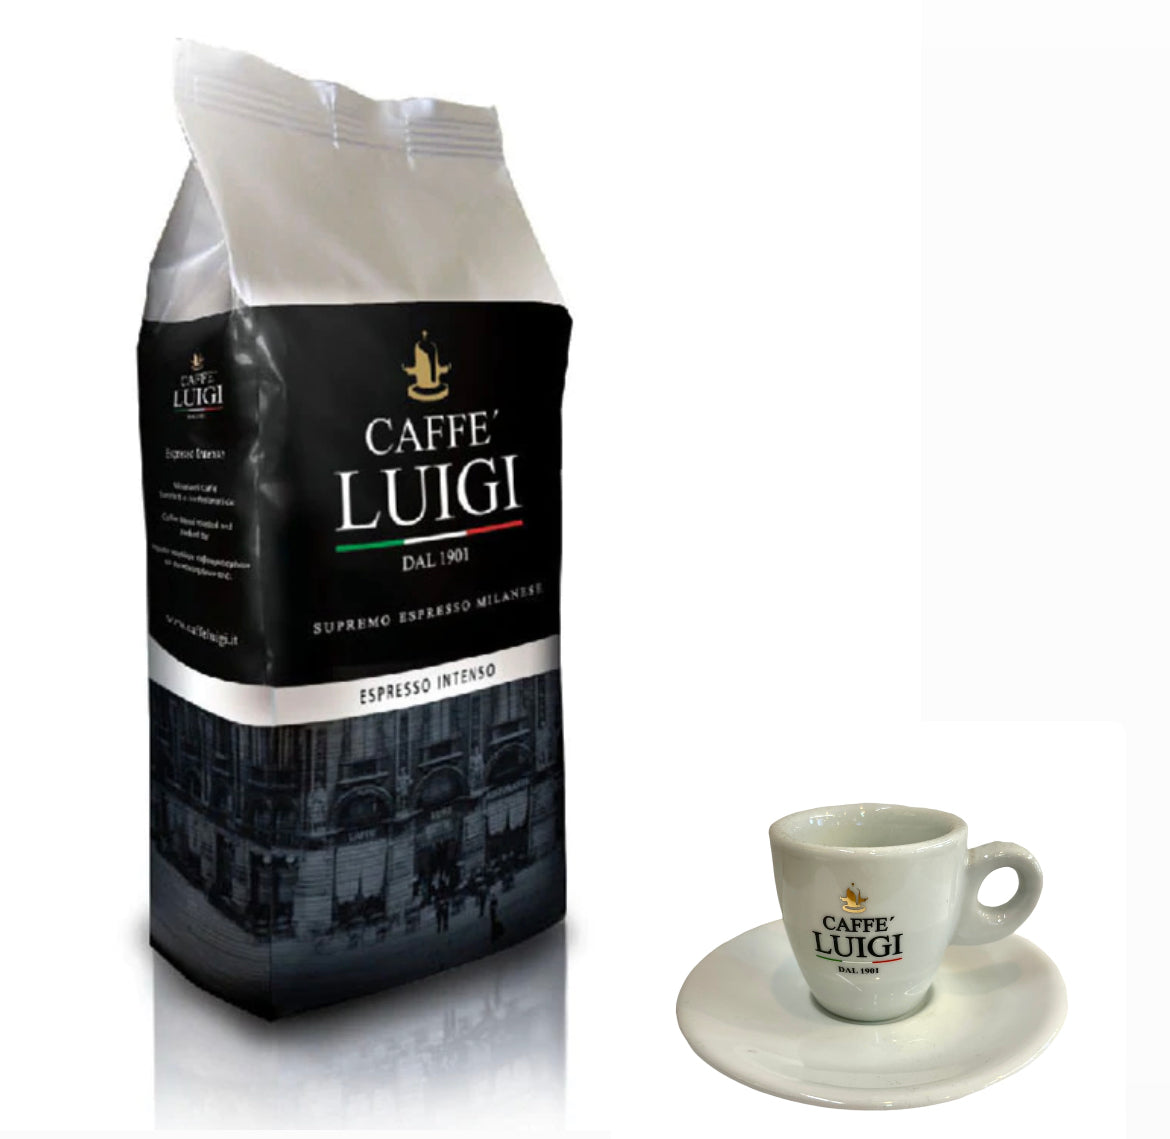 Espresso INTENSO Bohnen Beans 1Kg Caffe 'Luigi Arabica - Robusta Bohnen + 1 Espresso Tasse